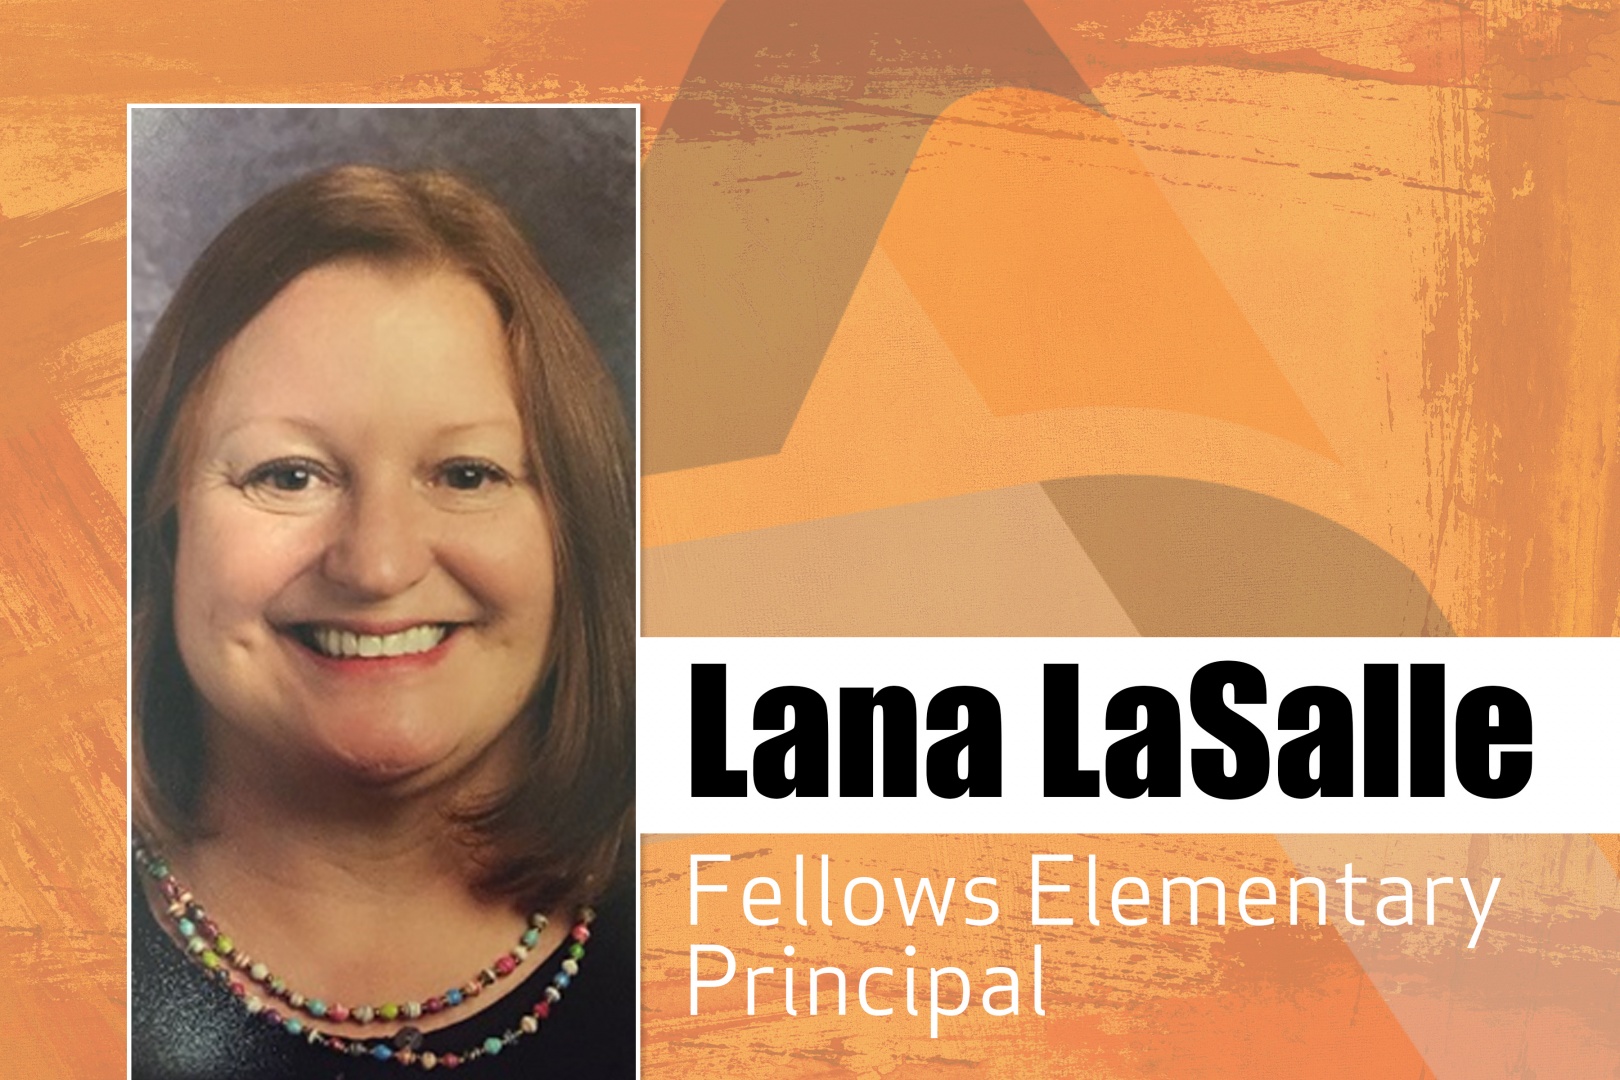 Lana LaSalle Fellows Elementary